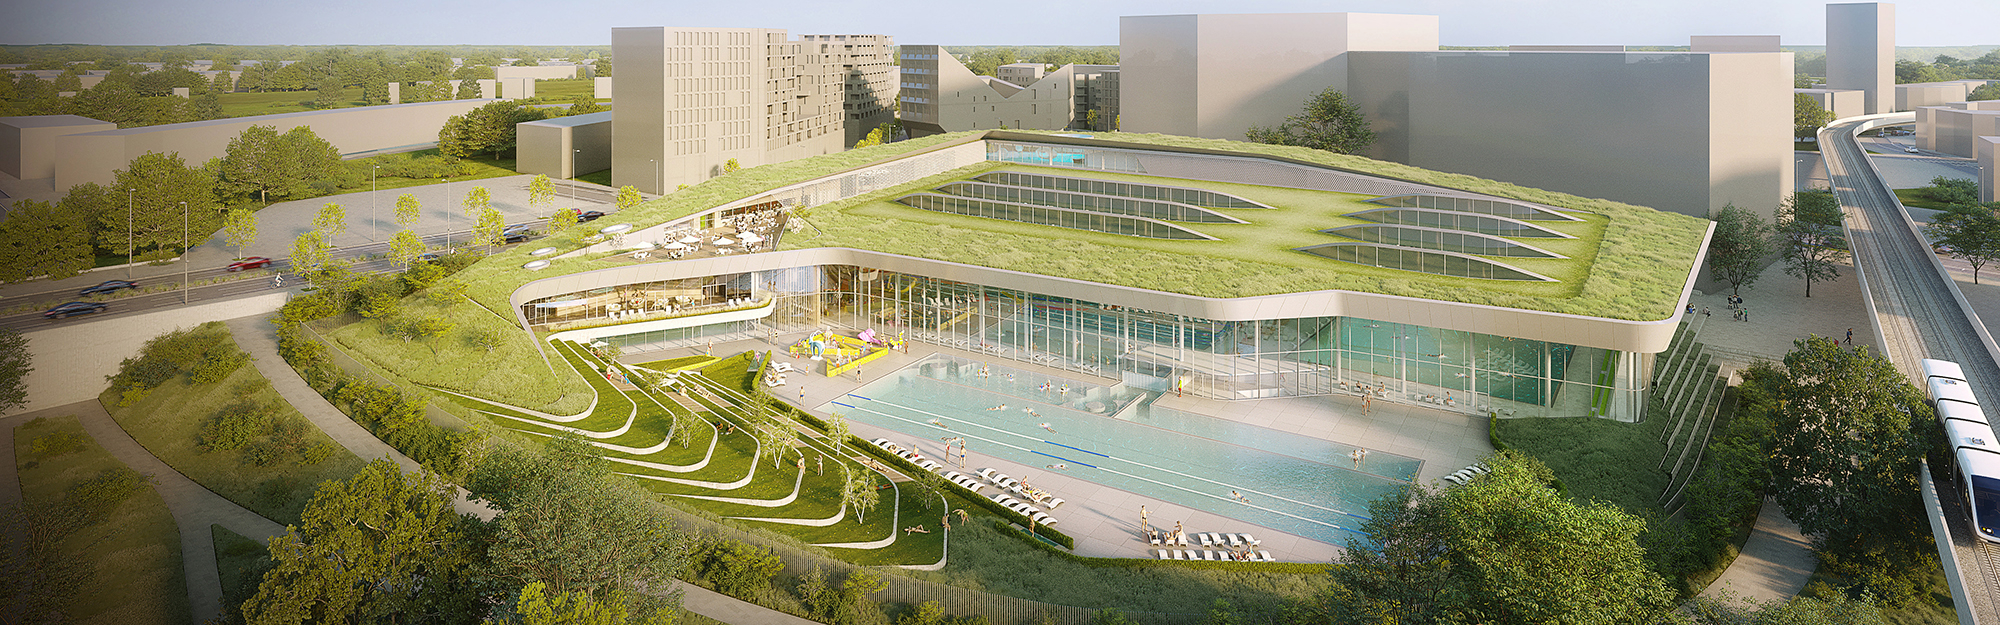 Futur piscine olympique : la MEL retient le projet de Rabot Dutilleul Construction